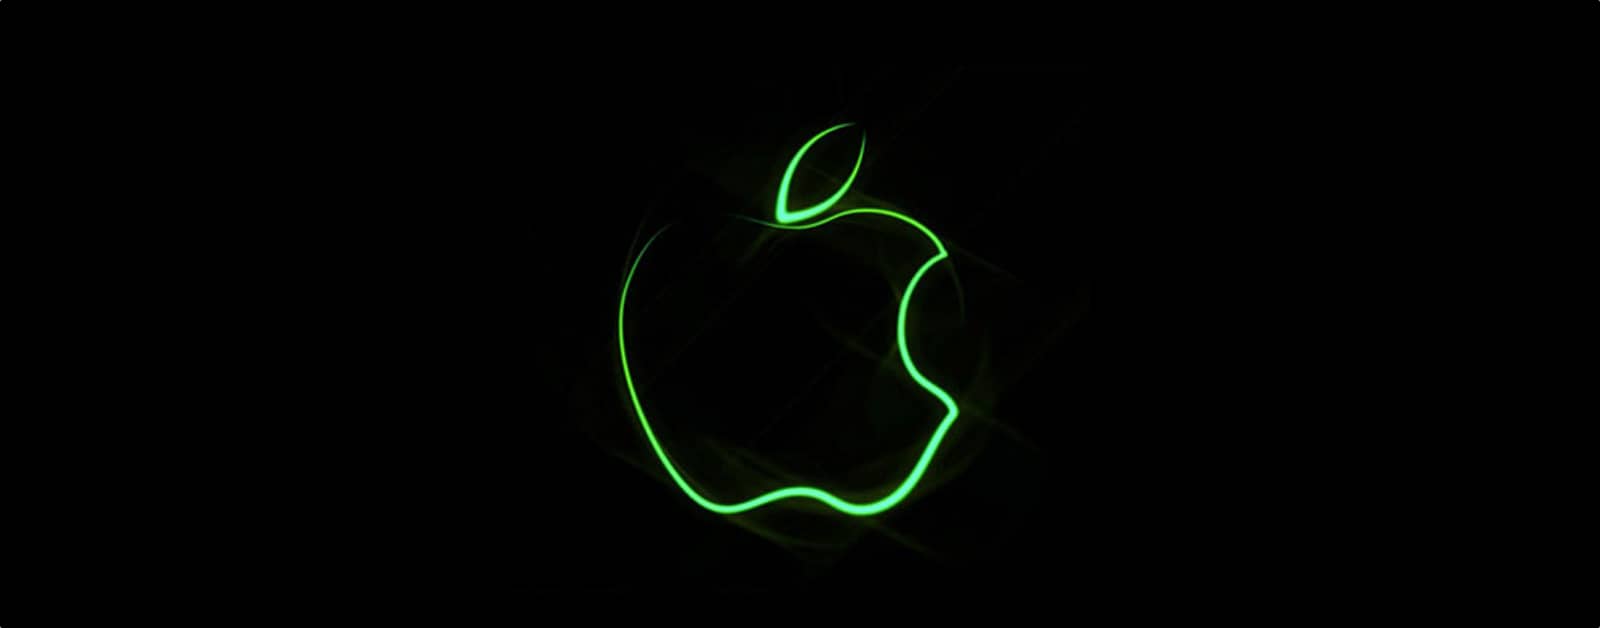 El viaje hacia Apple haciendo un iPhone neutro en carbono